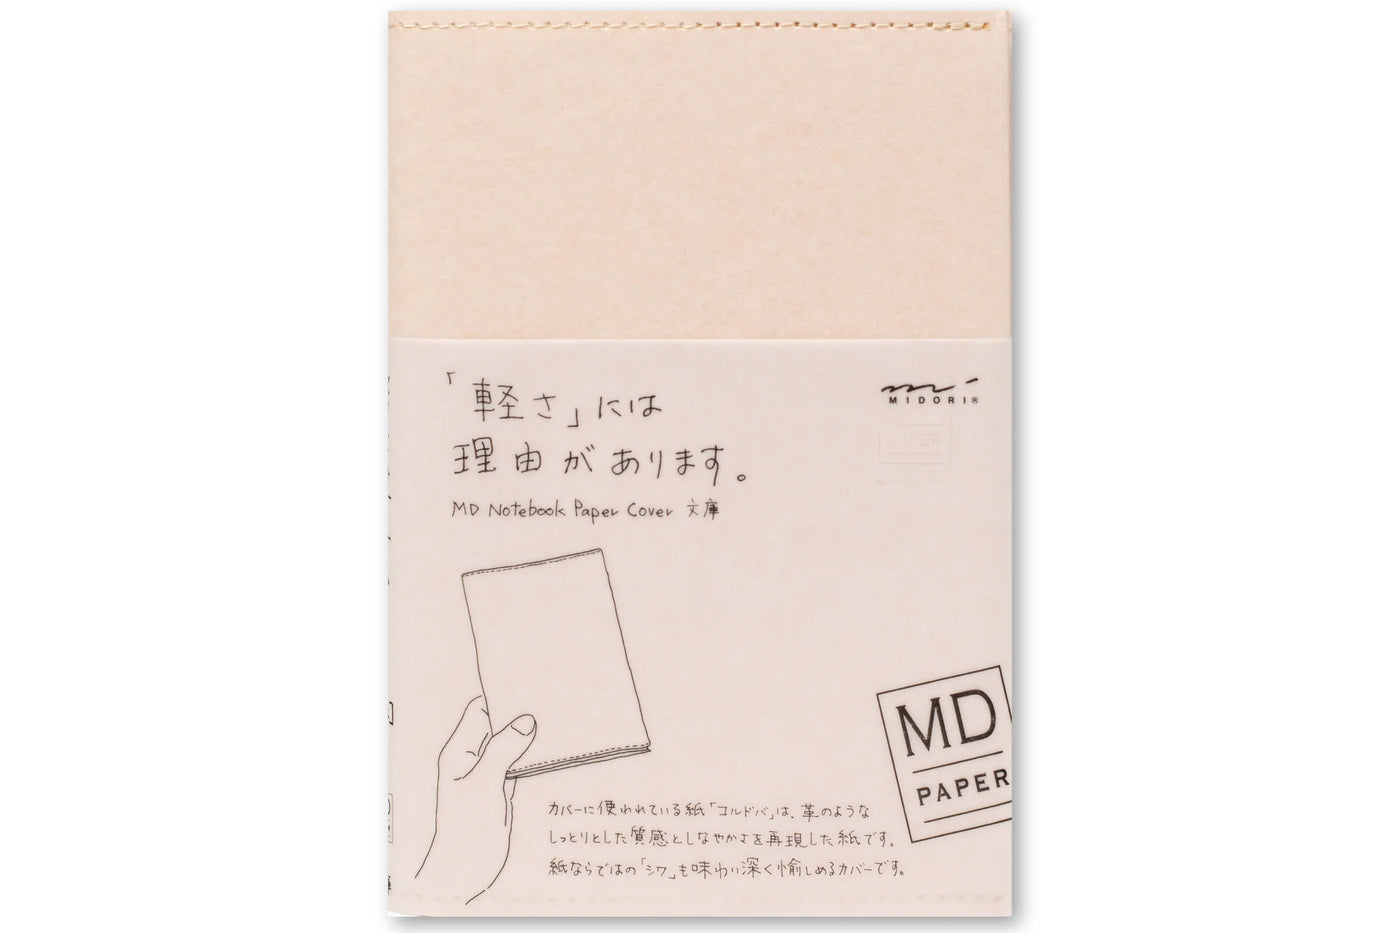 Midori MD Paper Notebook Cover, A6